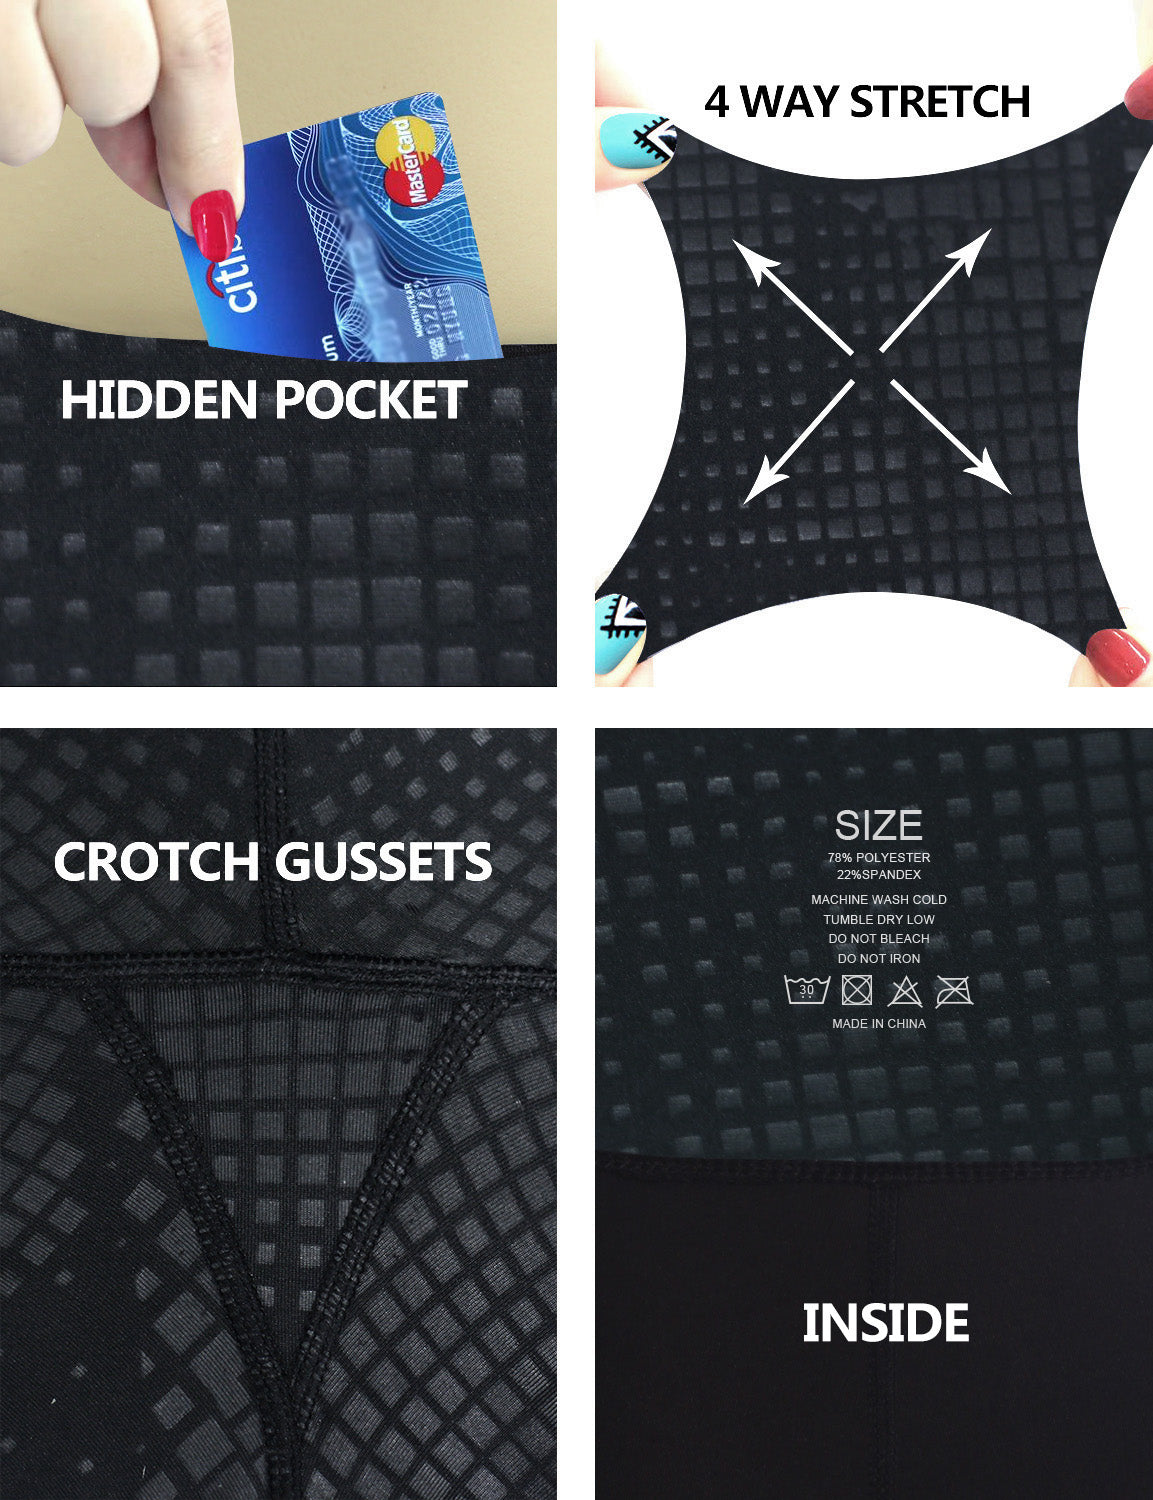 22" inseam 3D Printed Yoga Pants DISCO